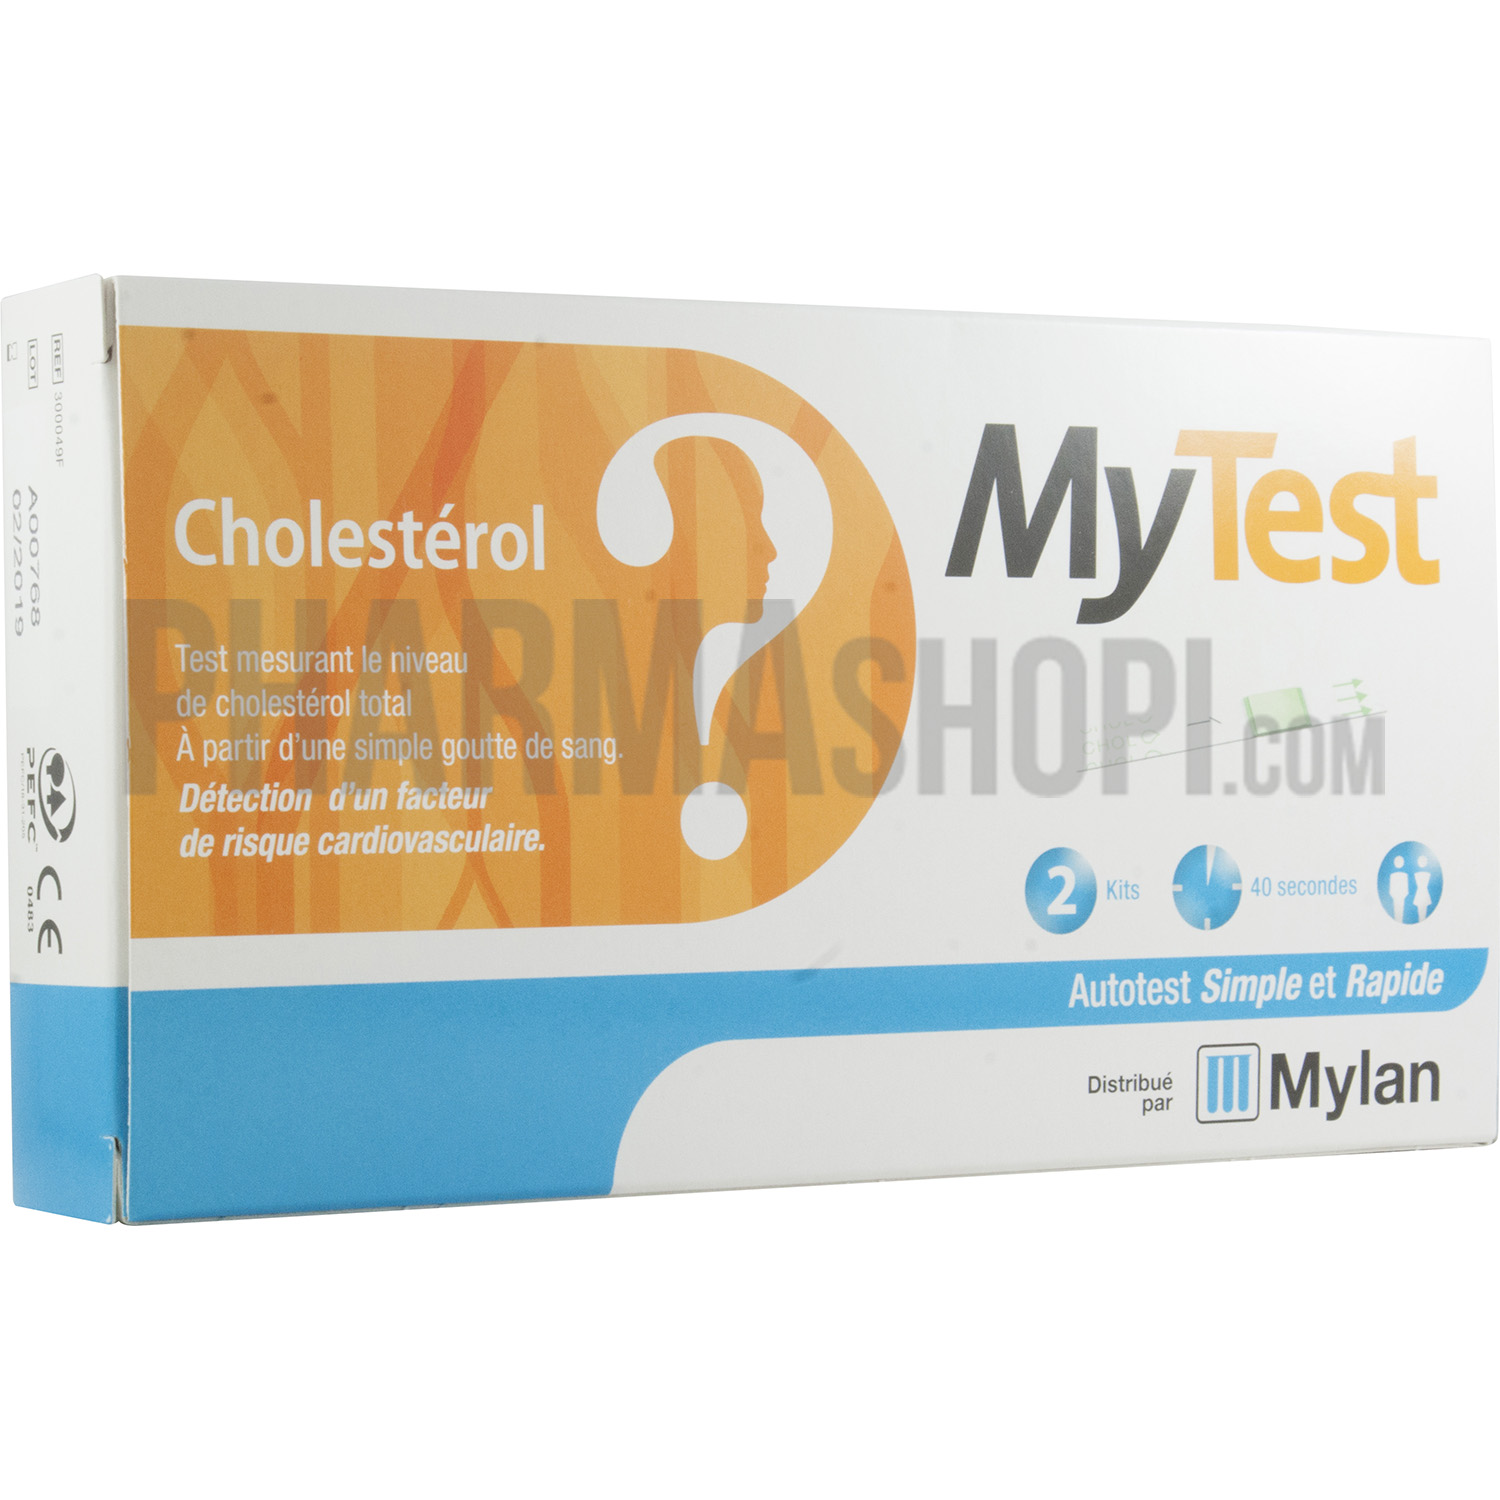 My test Cholestérol détection facteur cardiovasculaire Mylan - 2 kits